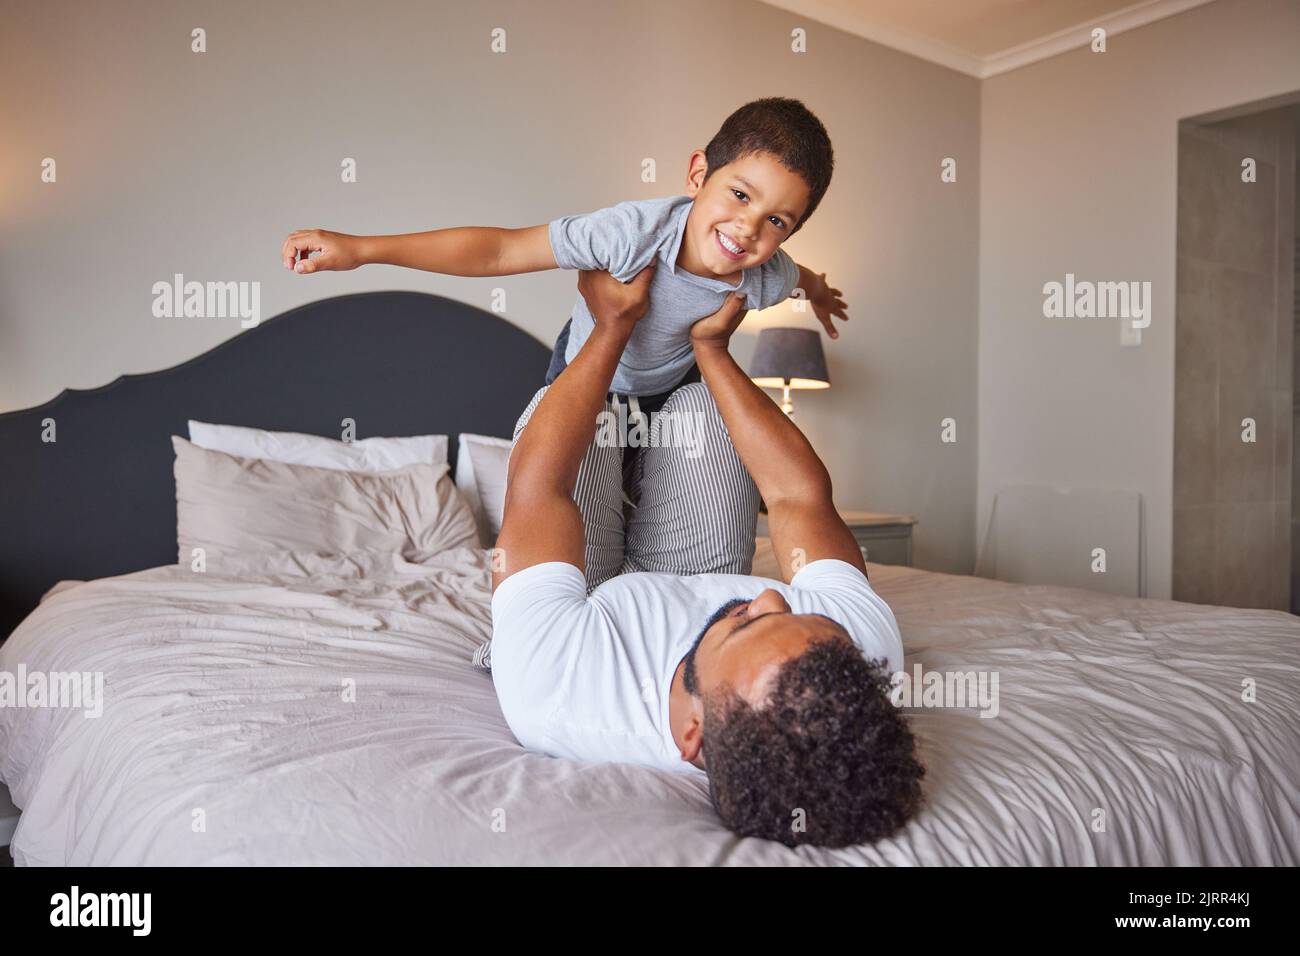 Lächeln, lieben und glücklich Vater und Sohn Familie Zeit spielen im Schlafzimmer Bett heben ihn wie Flugzeug oder Superheld. Liebevoller Vater, Mann oder alleinerziehender Elternteil Stockfoto